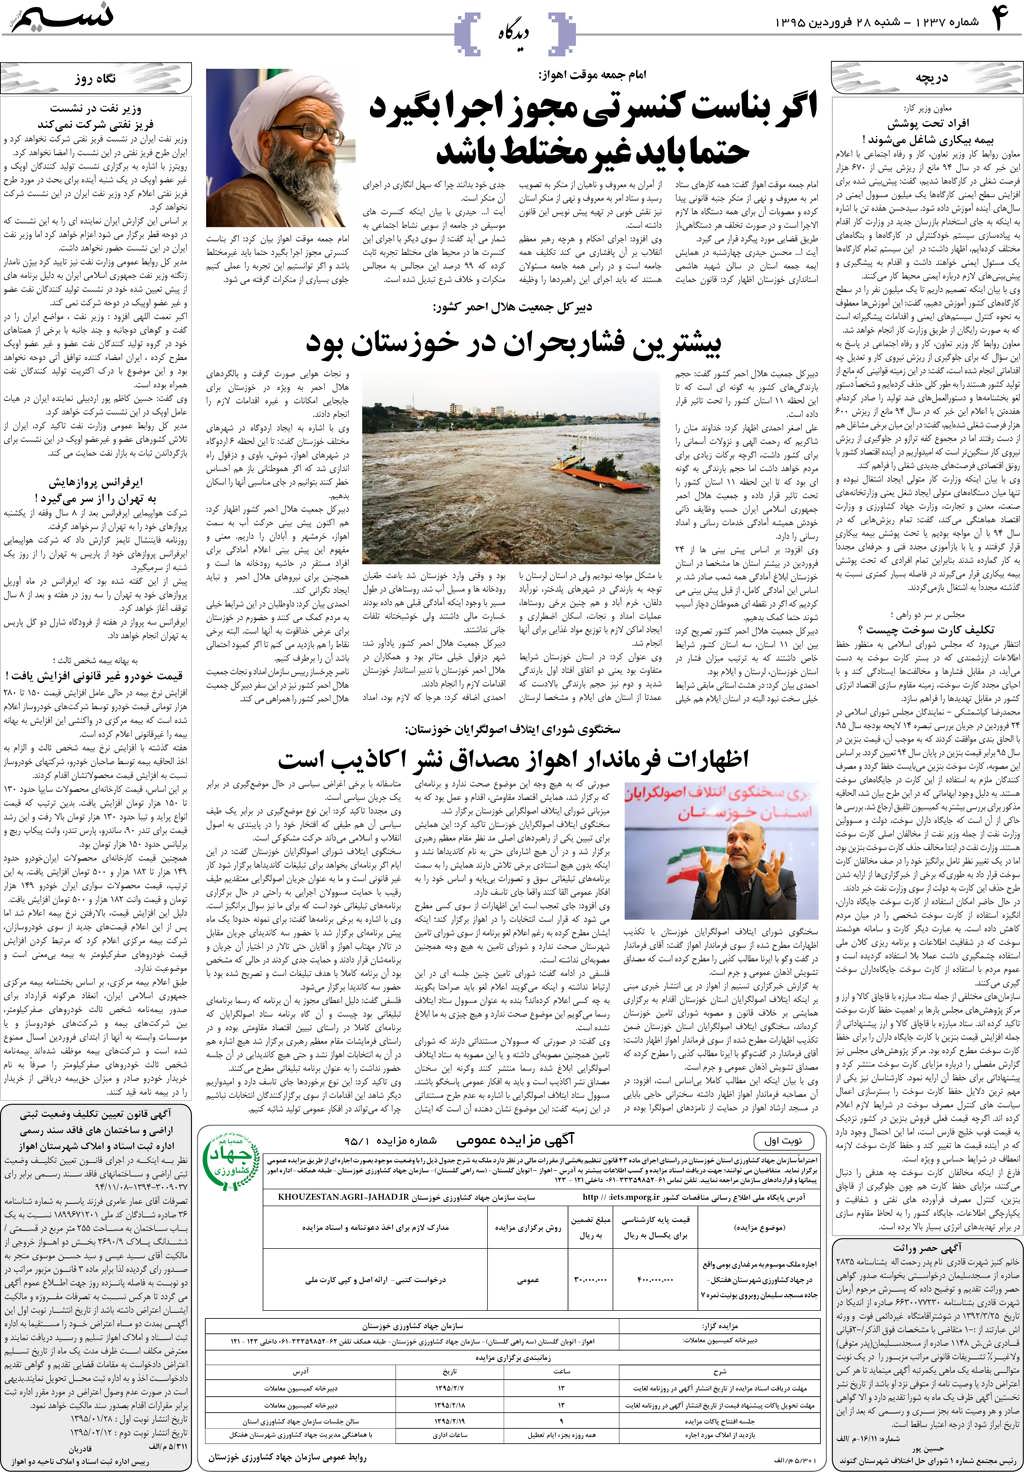 صفحه دیدگاه روزنامه نسیم شماره 1237